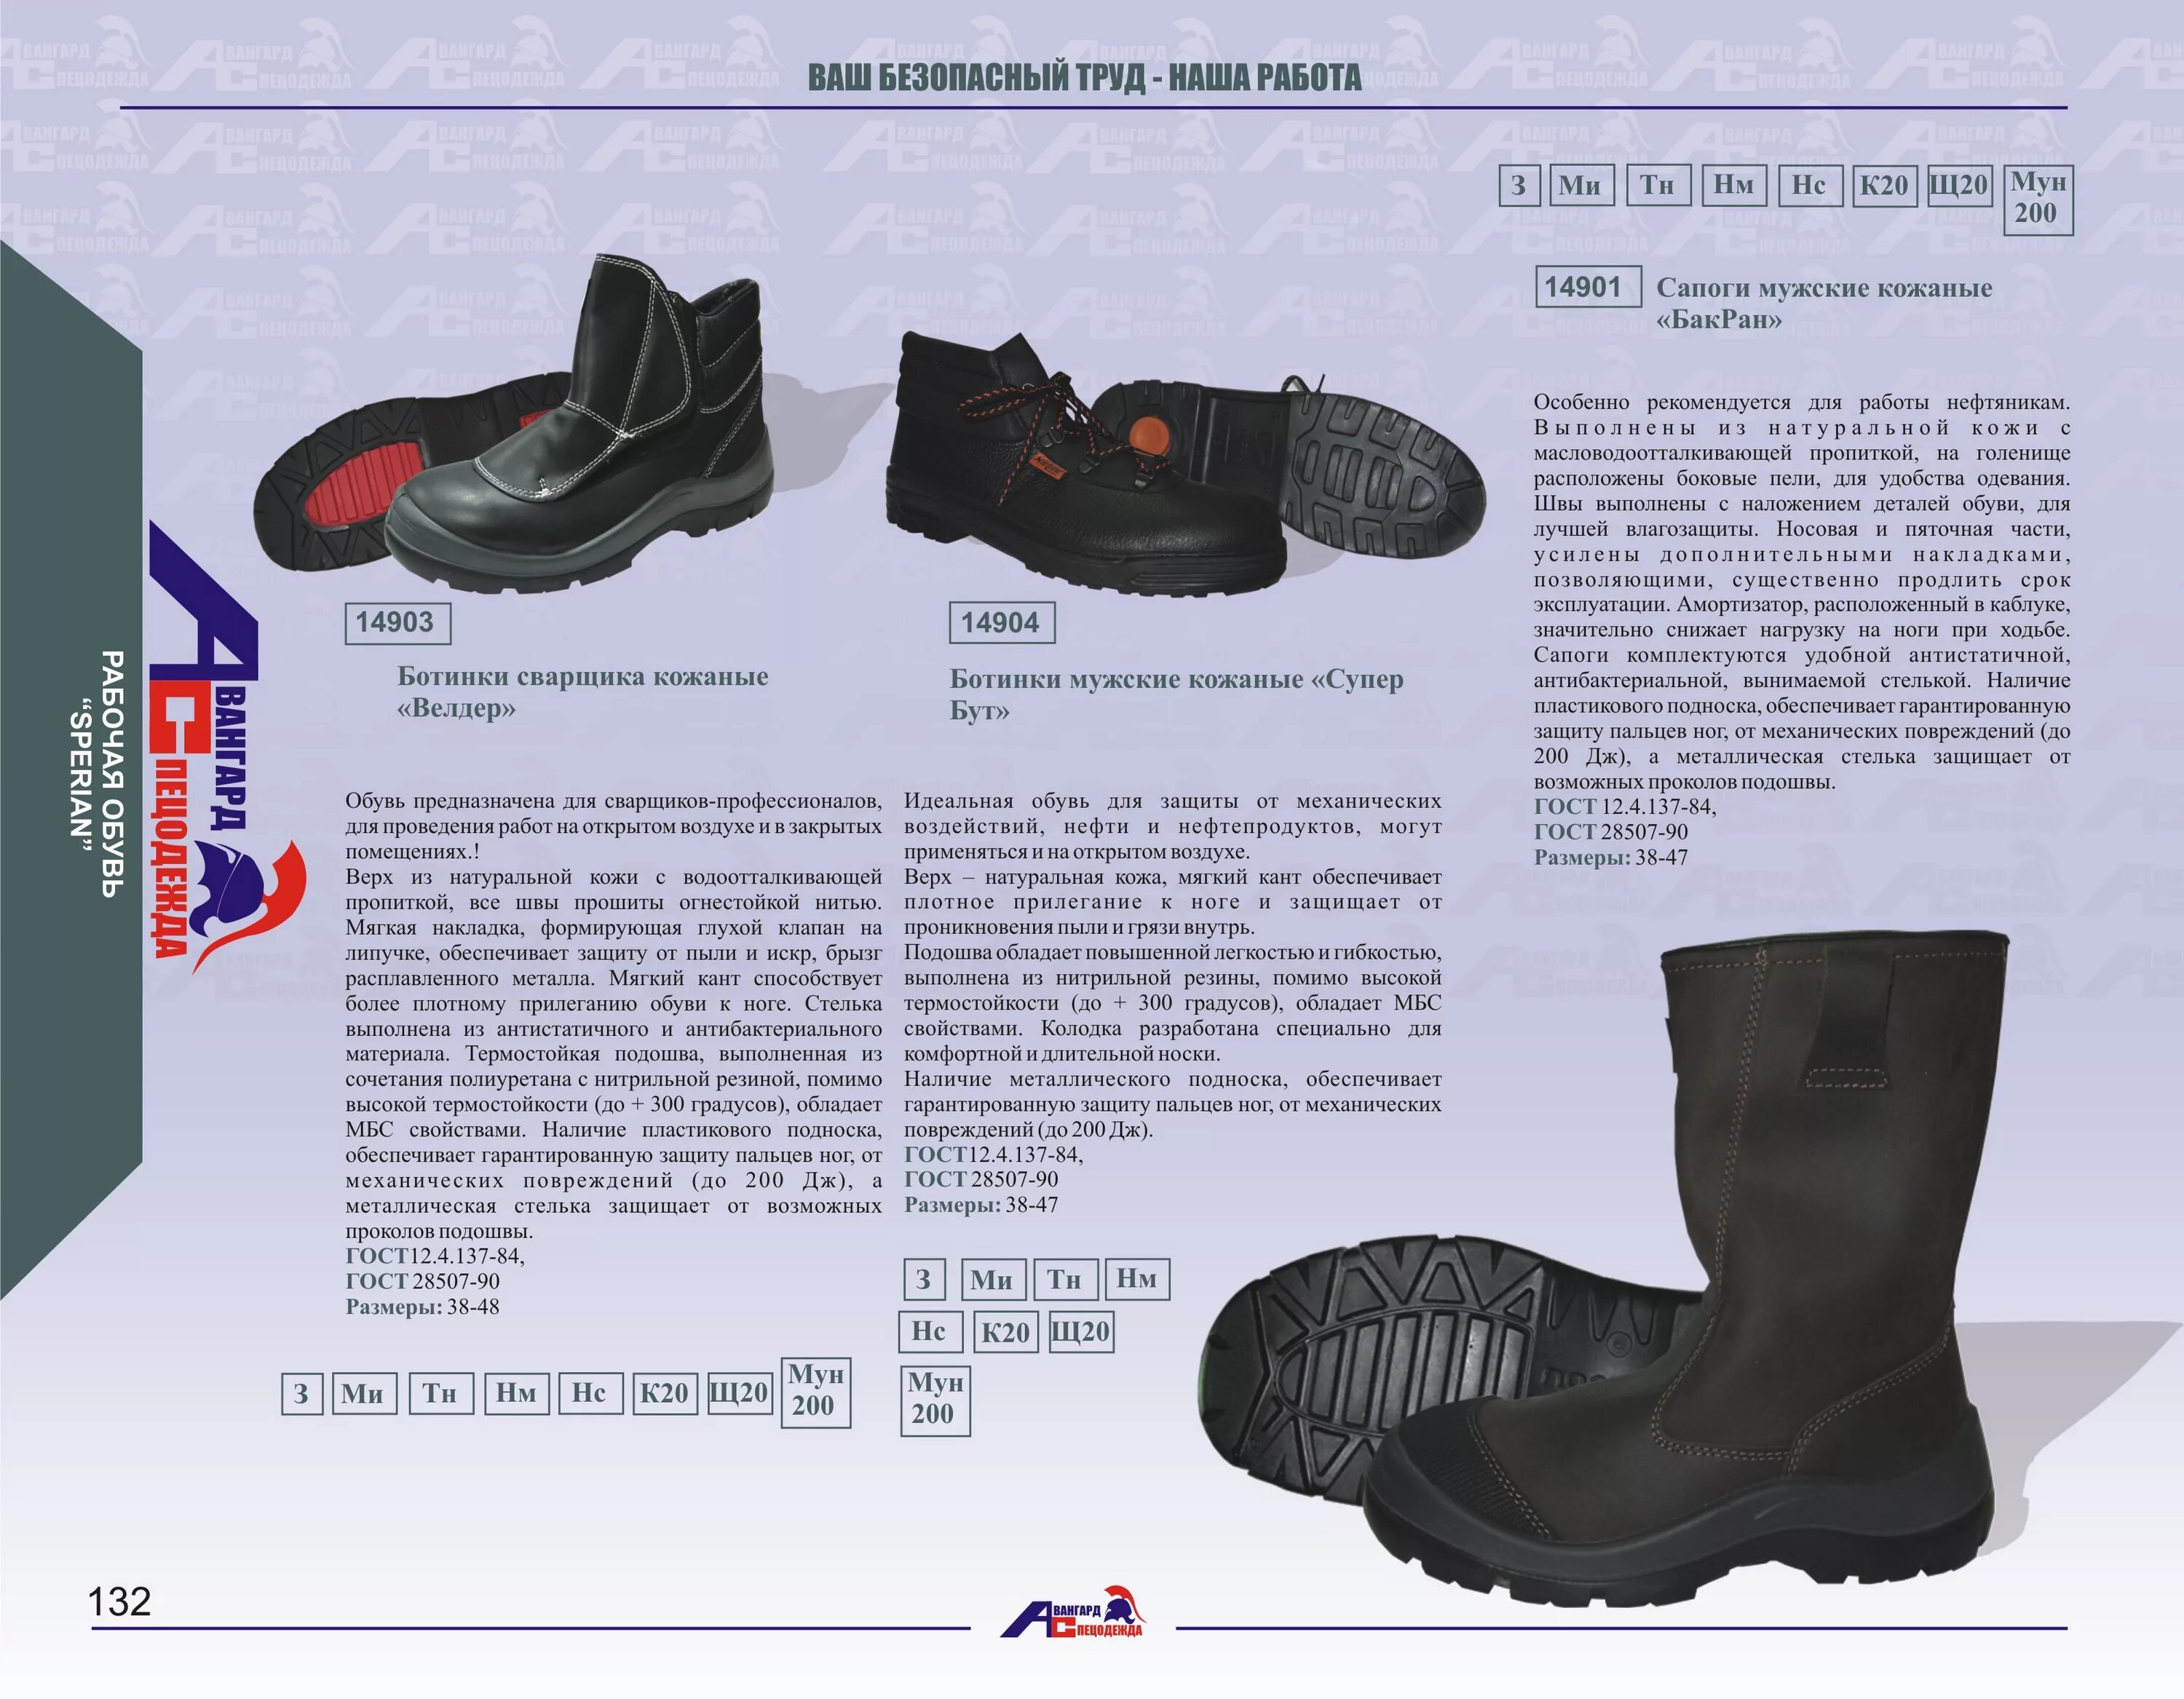 Сапоги резиновые специальные для пожарных. Обувь сварщика ГОСТ. Со 5.034/0. Обувь специальная для защиты от контакта с нагретыми поверхностями. 1 34 0 001